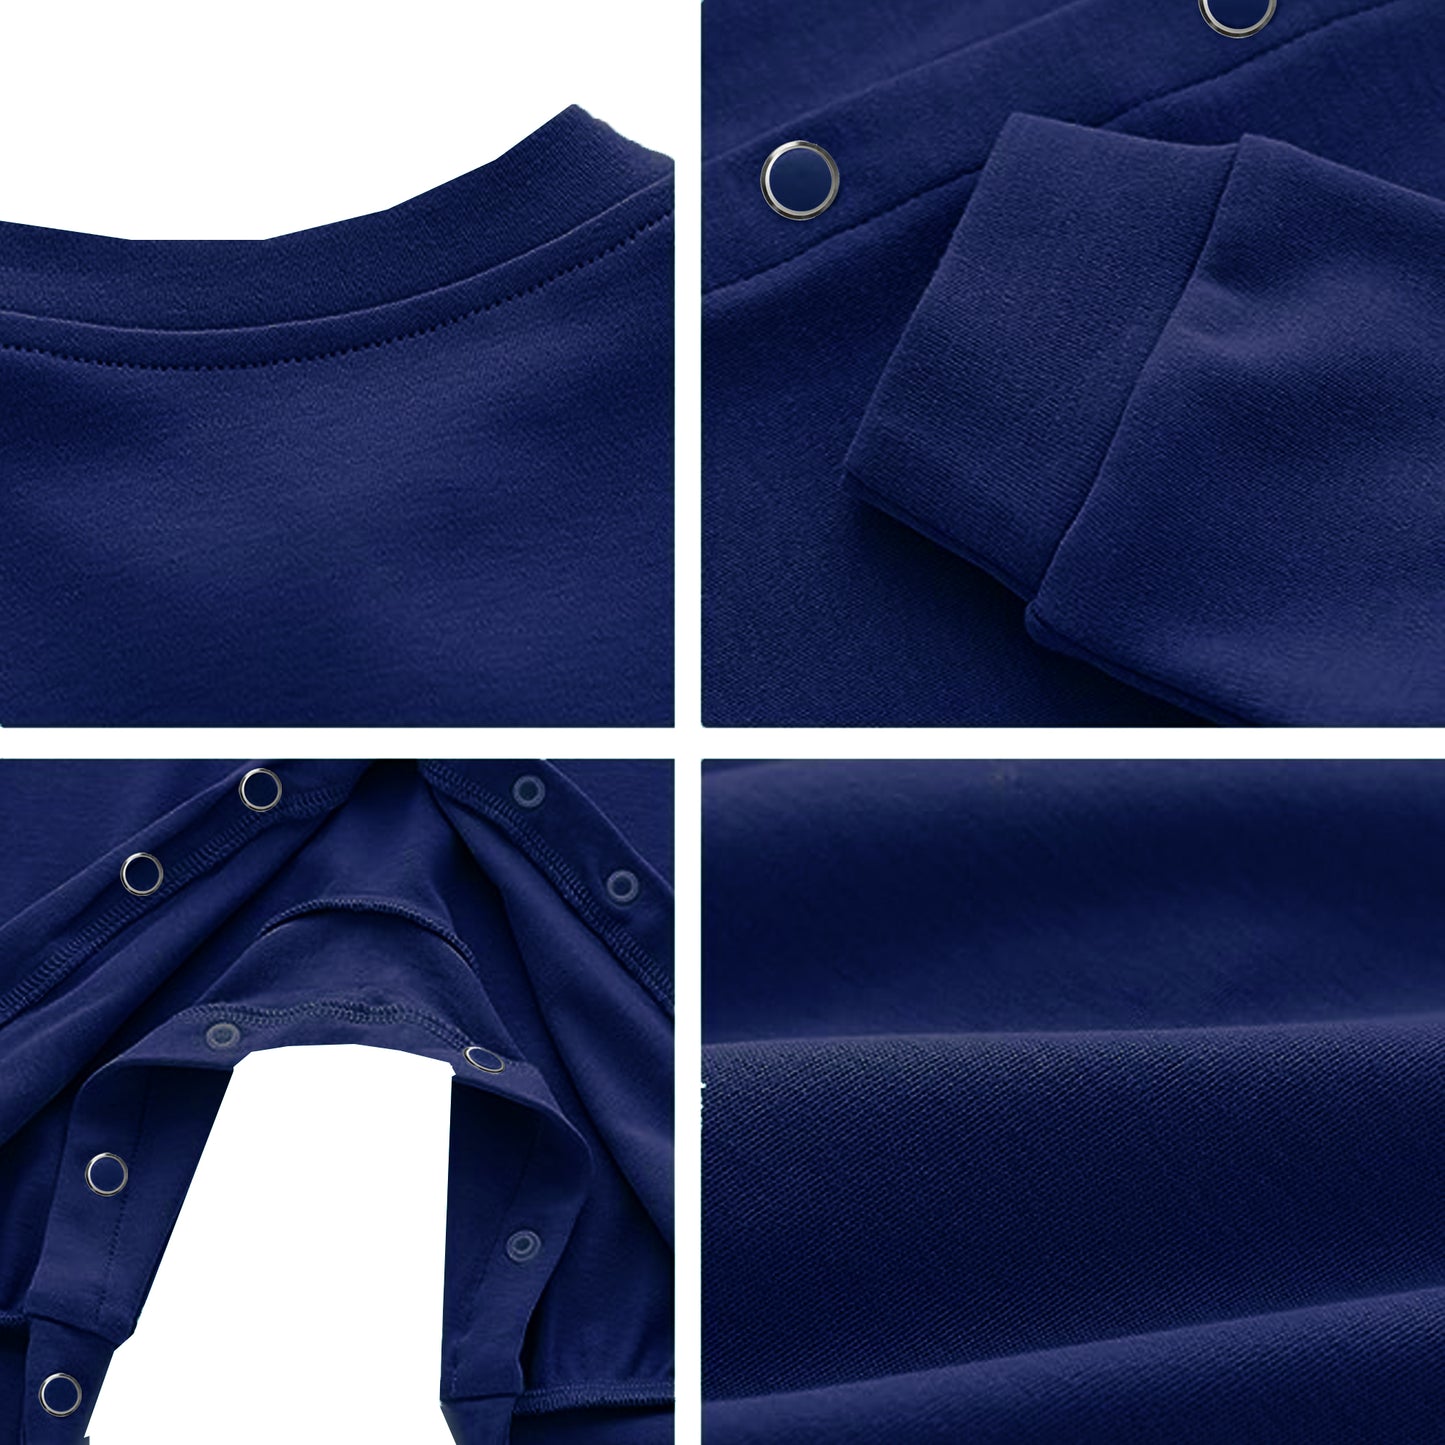 Full Length Printed Baby Footies Sleepsuit Romper Pack of 3-(Royal Blue)